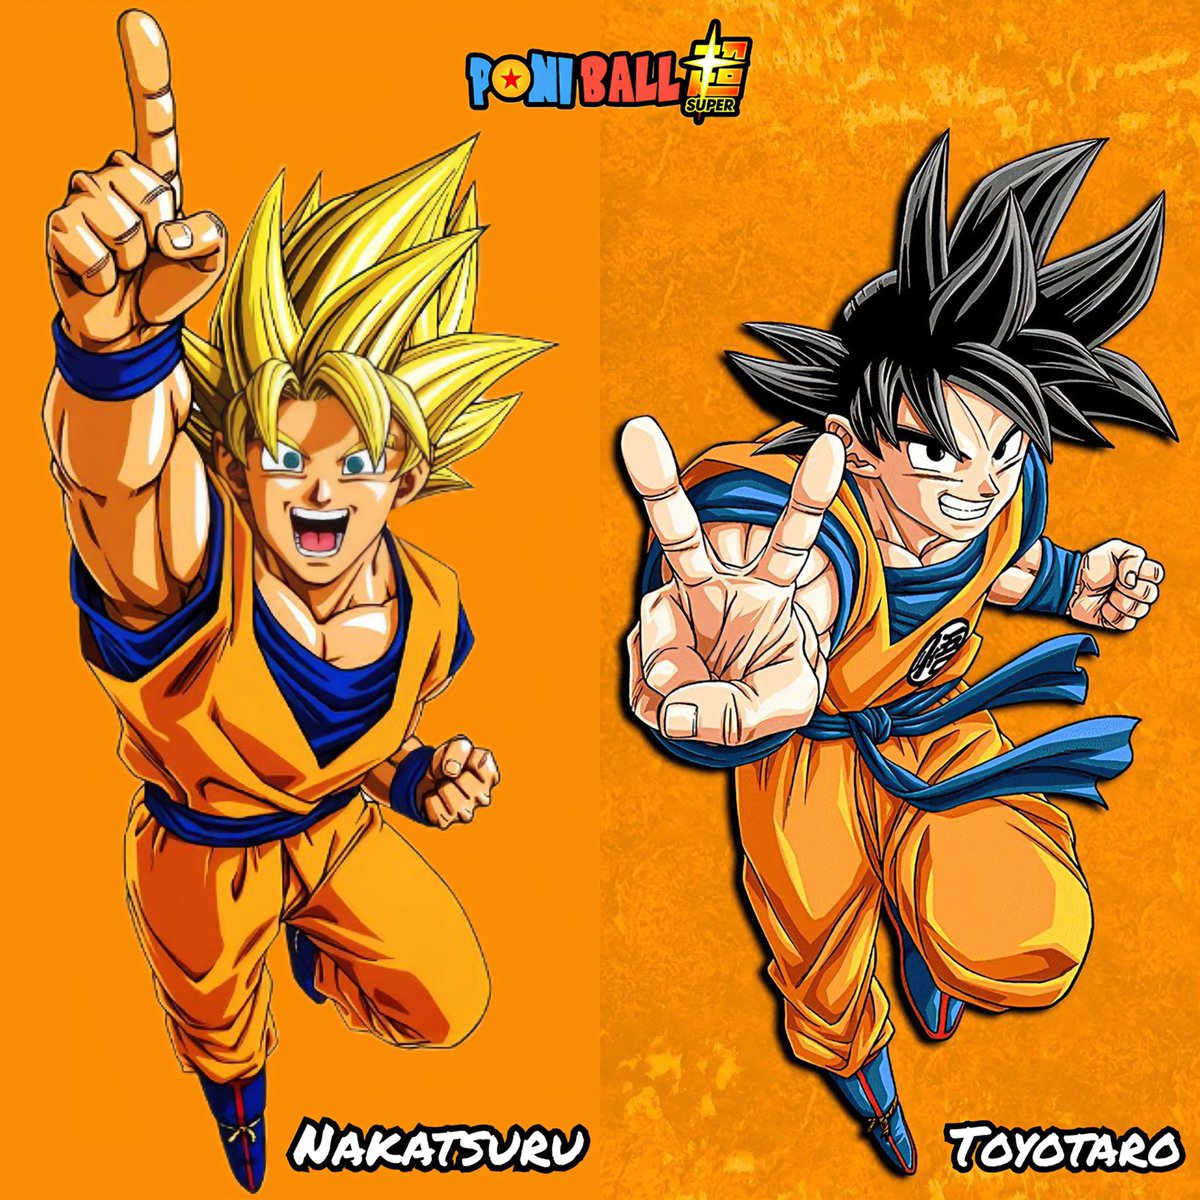 Son Goku - Katsuyoshi Nakatsuru / Toyotaro

Goku dibujado por dos de los artistas más emblemáticos en la historia de Dragon Ball, Nakatsuru siendo la cara del anime en el pasado, y Toyotaro siendo la cara moderna del manga de la serie.